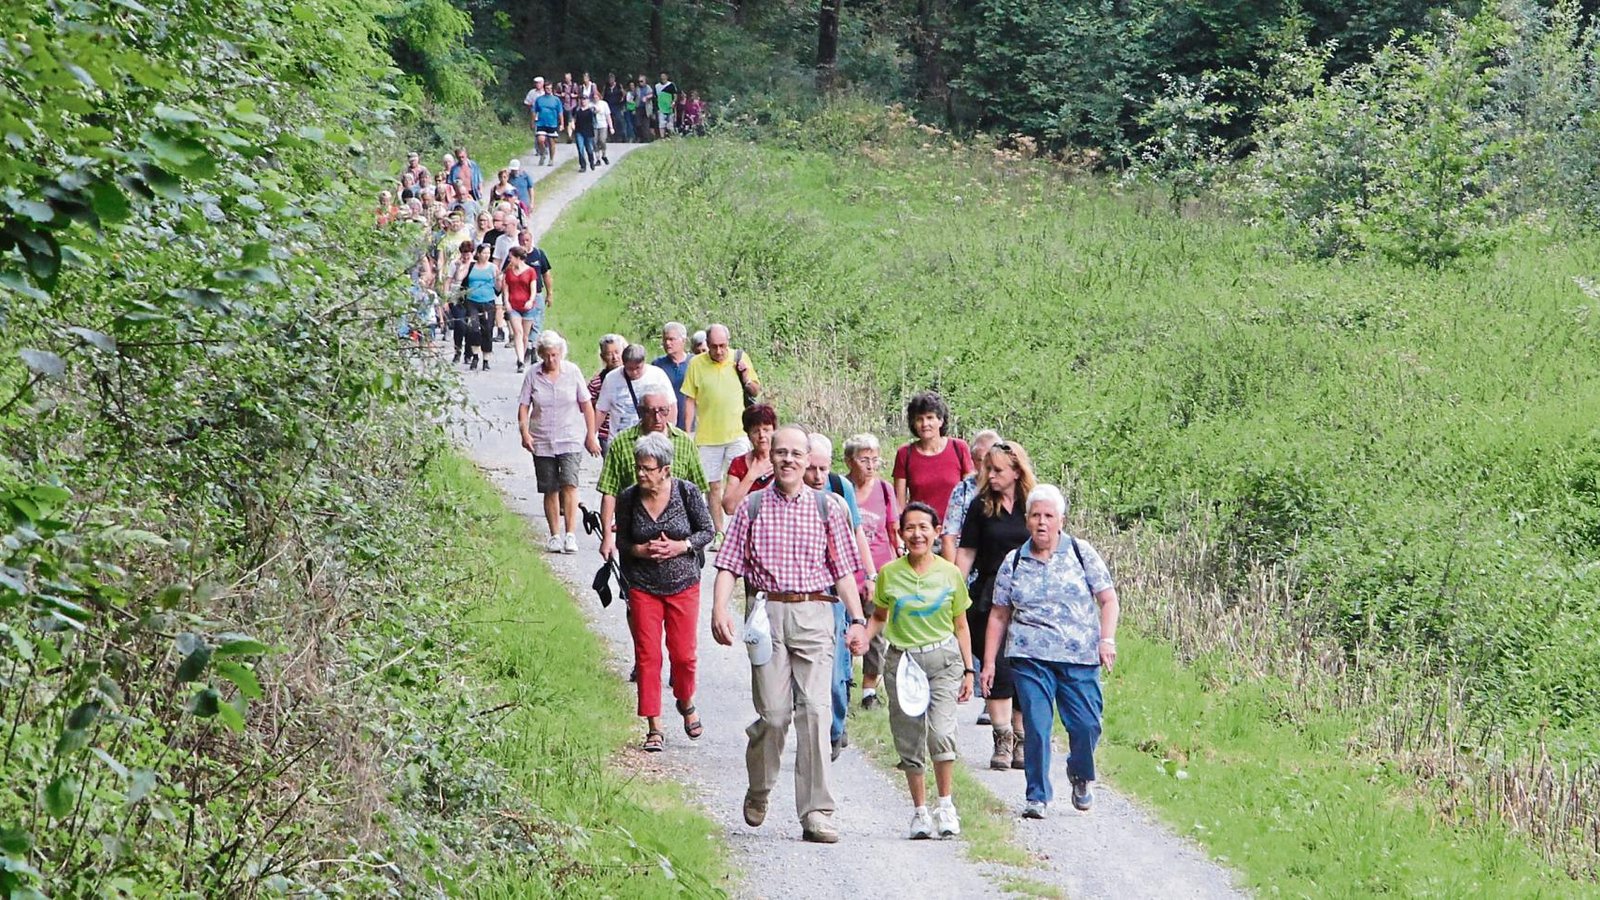 239 Teilnehmer ließen sich von unsicheren Wetterprognosen nicht schrecken und nahmen die zehn Kilometer von Vaihingen nach Oberriexingen zu Fuß in Angriff. Dafür wurden sie mit angenehmen Temperaturen belohnt.  Fotos: Banholzer